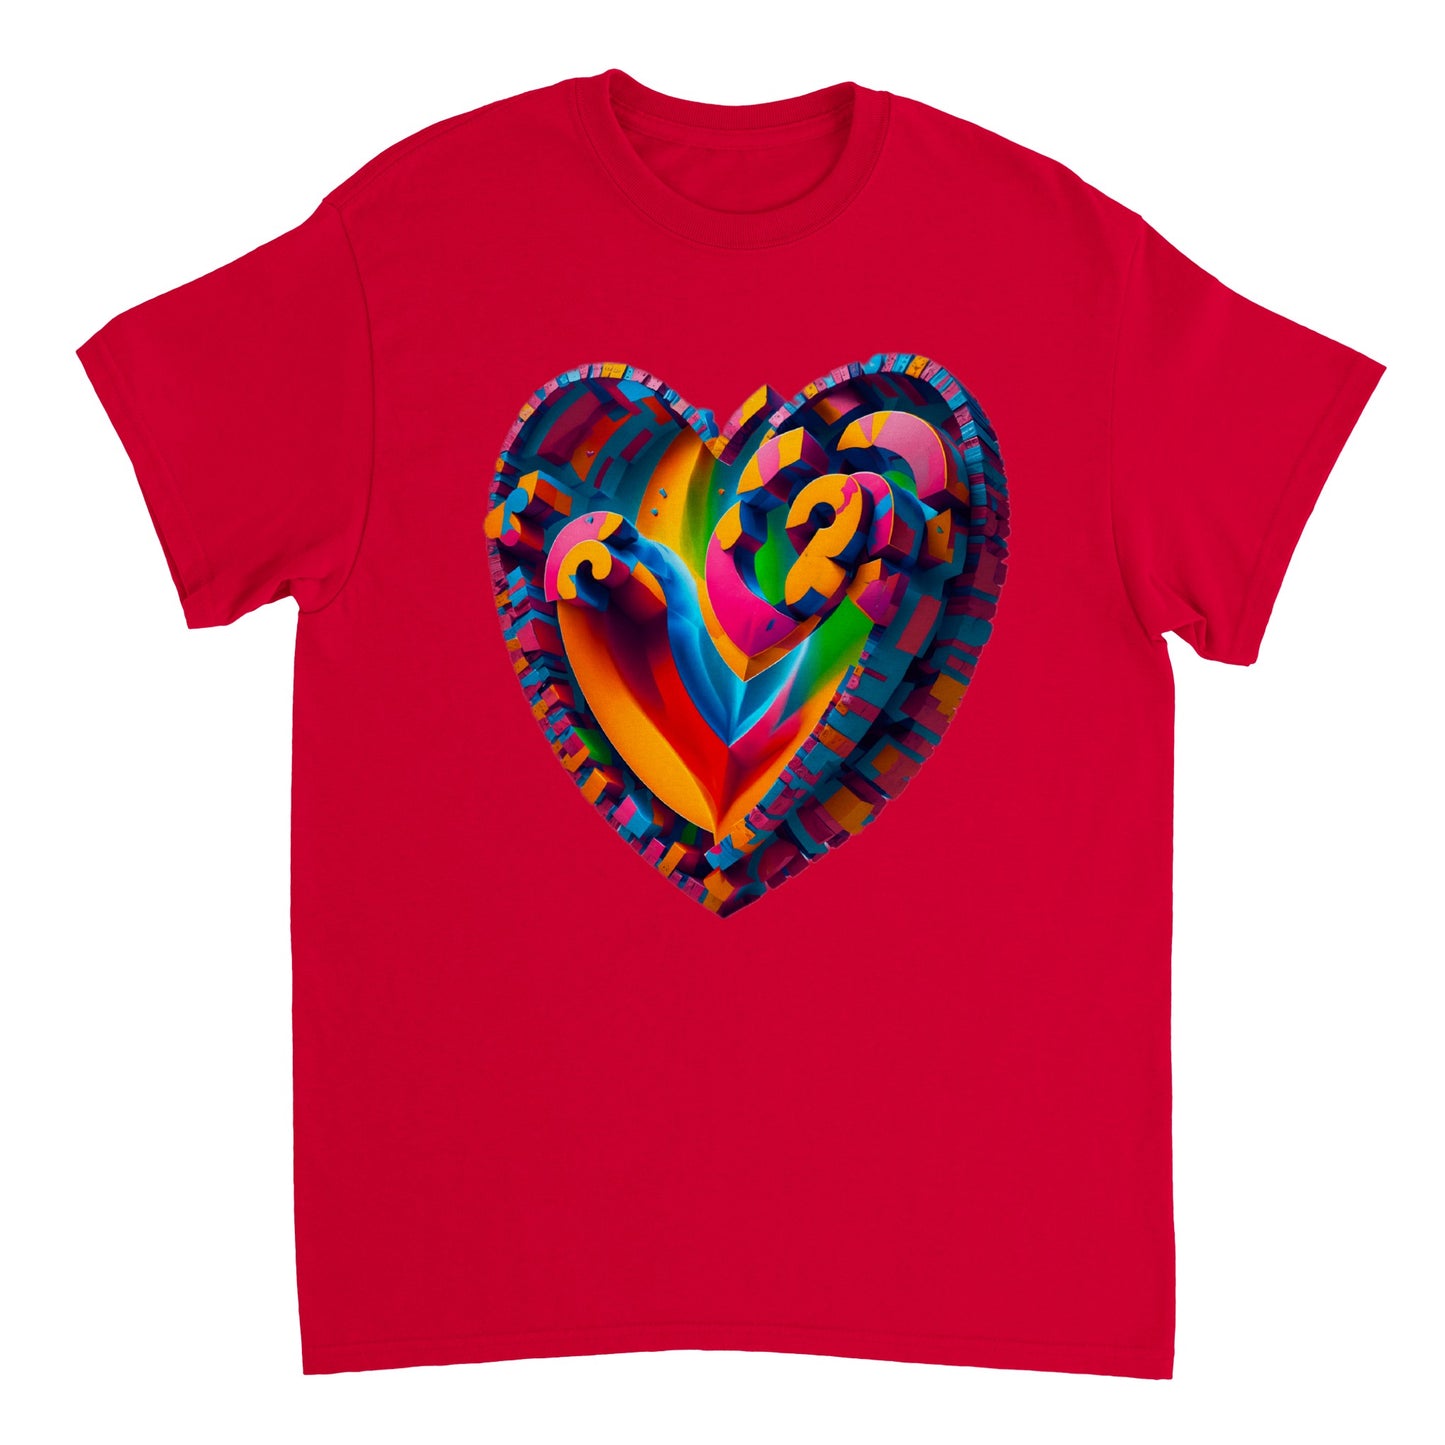 Love Heart - Heavyweight Unisex Crewneck T-shirt 28